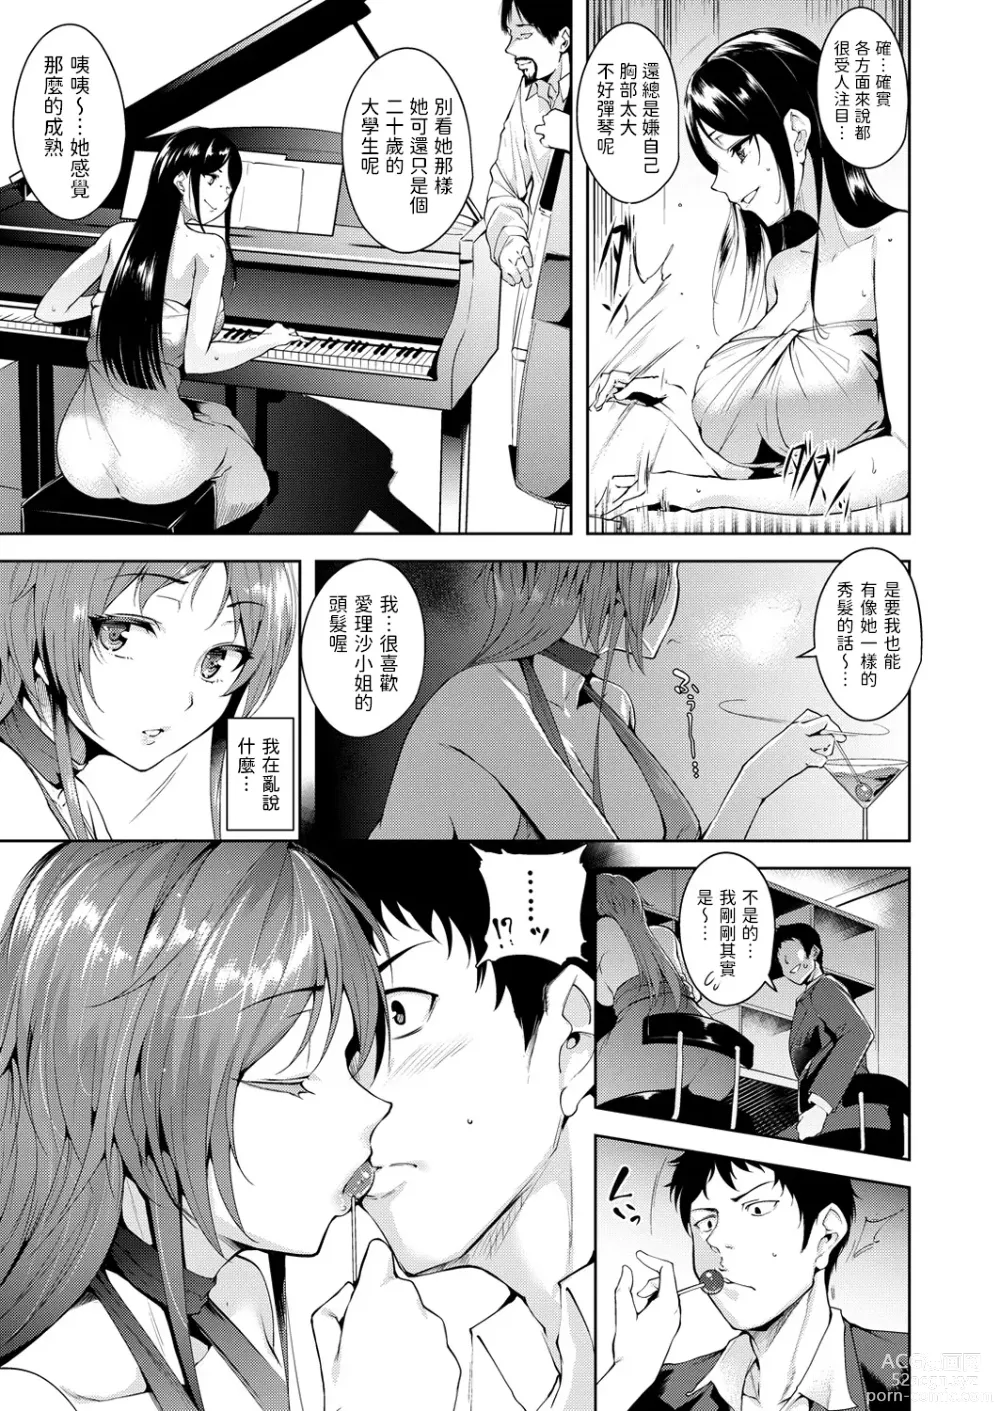 Page 5 of manga Maraschino Cherry Kiss